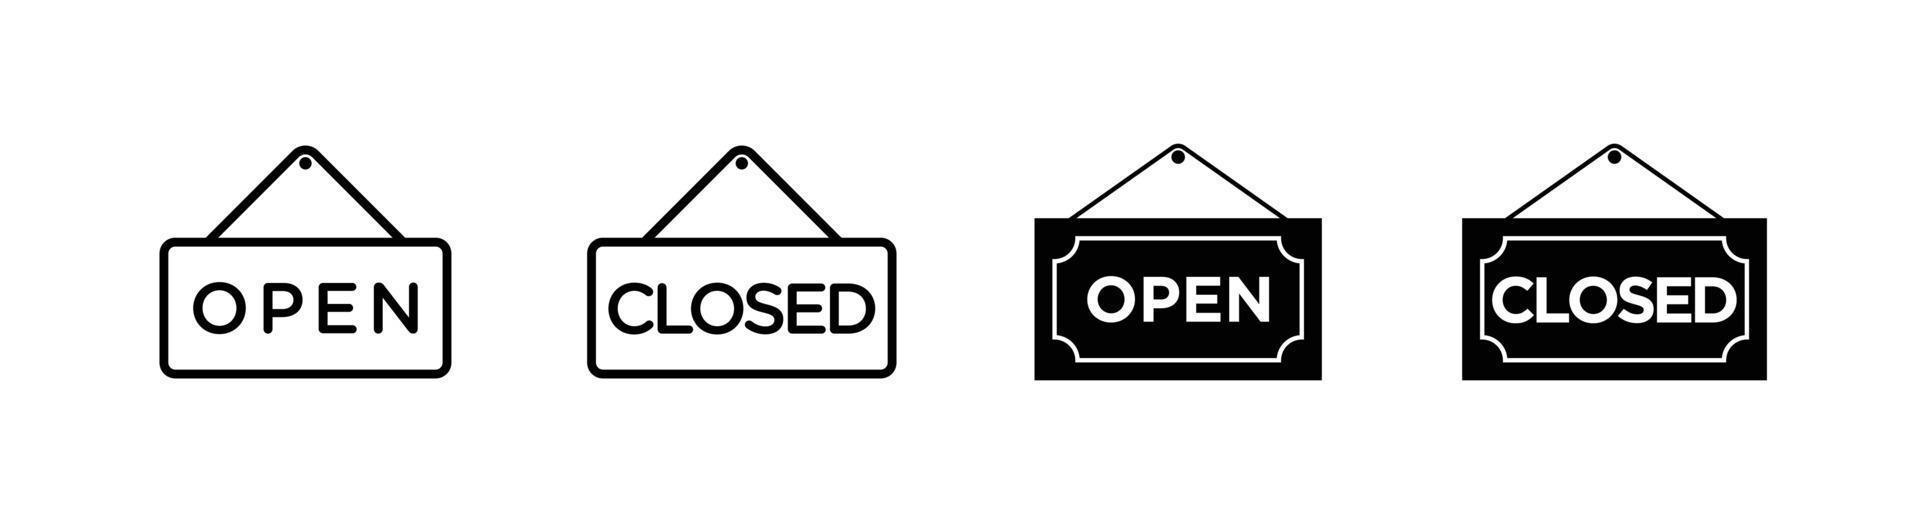 signo abierto y cerrado, elemento de diseño de icono de aviso de tienda vector